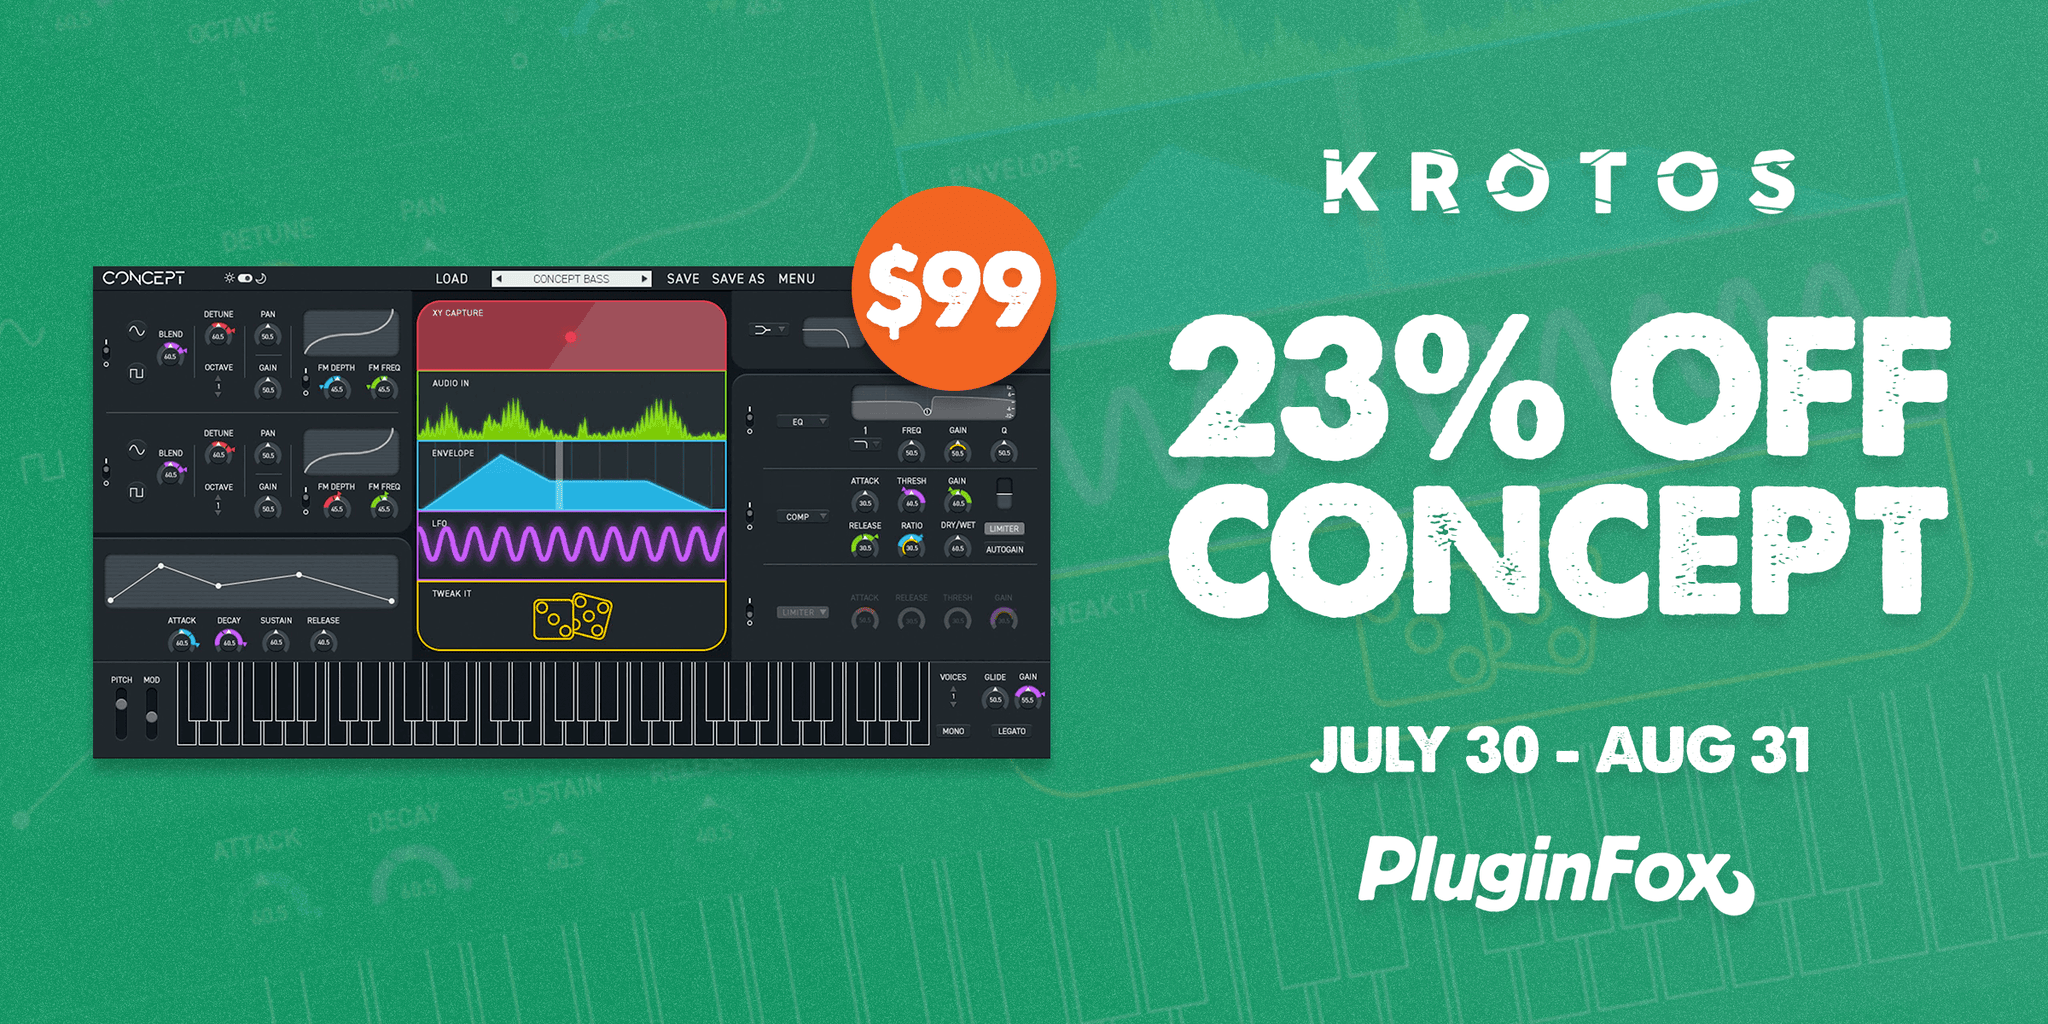 Krotos Audio Concept Sale - July 30 - Aug 31